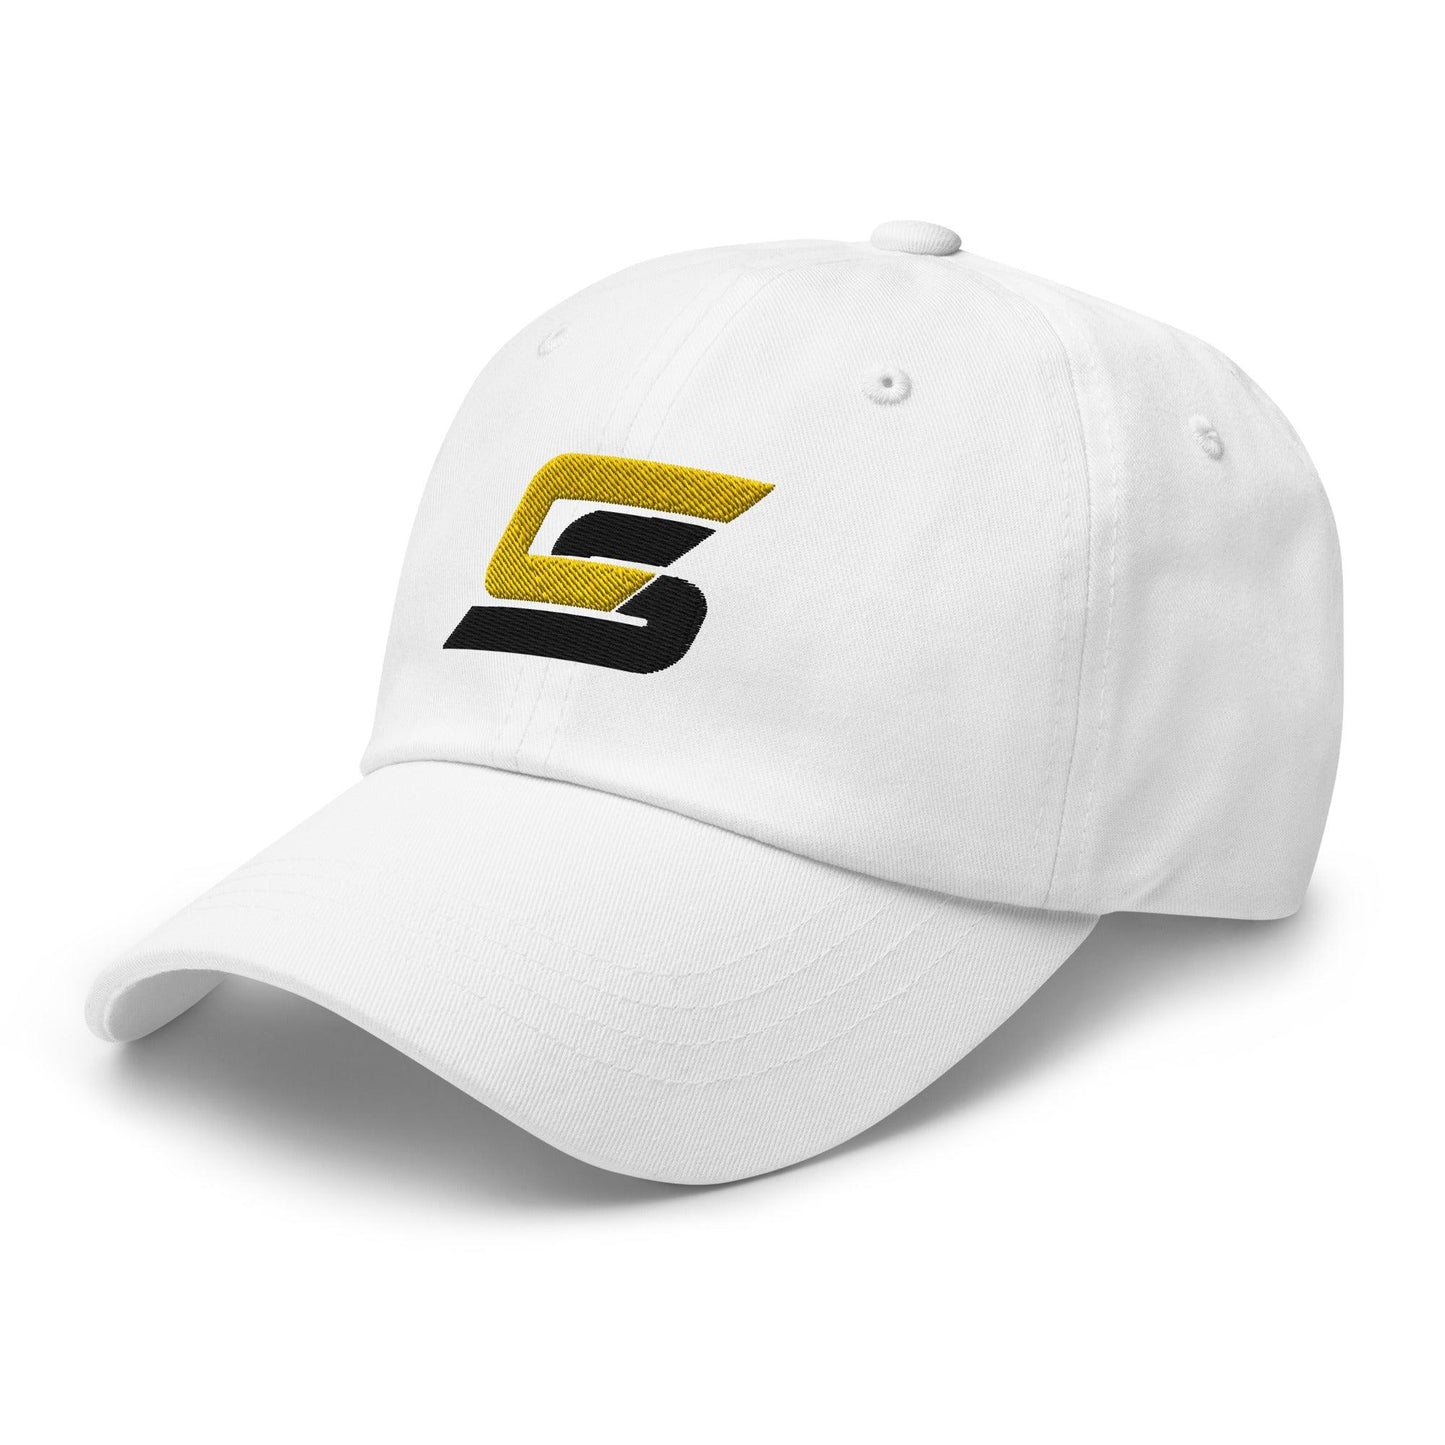 Cory Spangenberg "Elite" hat - Fan Arch